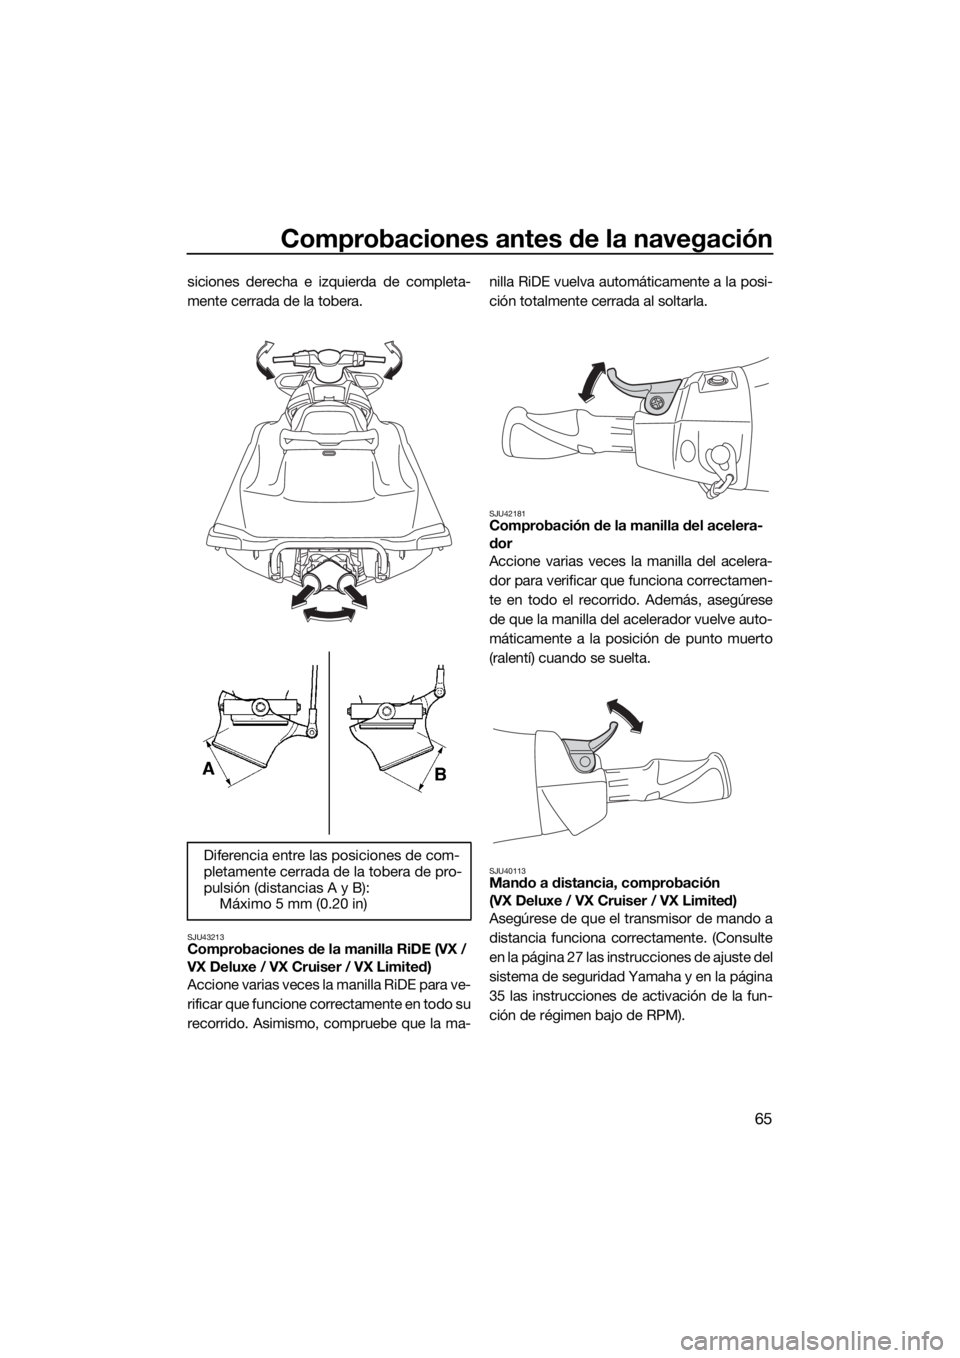 YAMAHA VX 2020  Manuale de Empleo (in Spanish) Comprobaciones antes de la navegación
65
siciones derecha e izquierda de completa-
mente cerrada de la tobera.
SJU43213Comprobaciones de la manilla RiDE (VX / 
VX Deluxe / VX Cruiser / VX Limited)
Ac